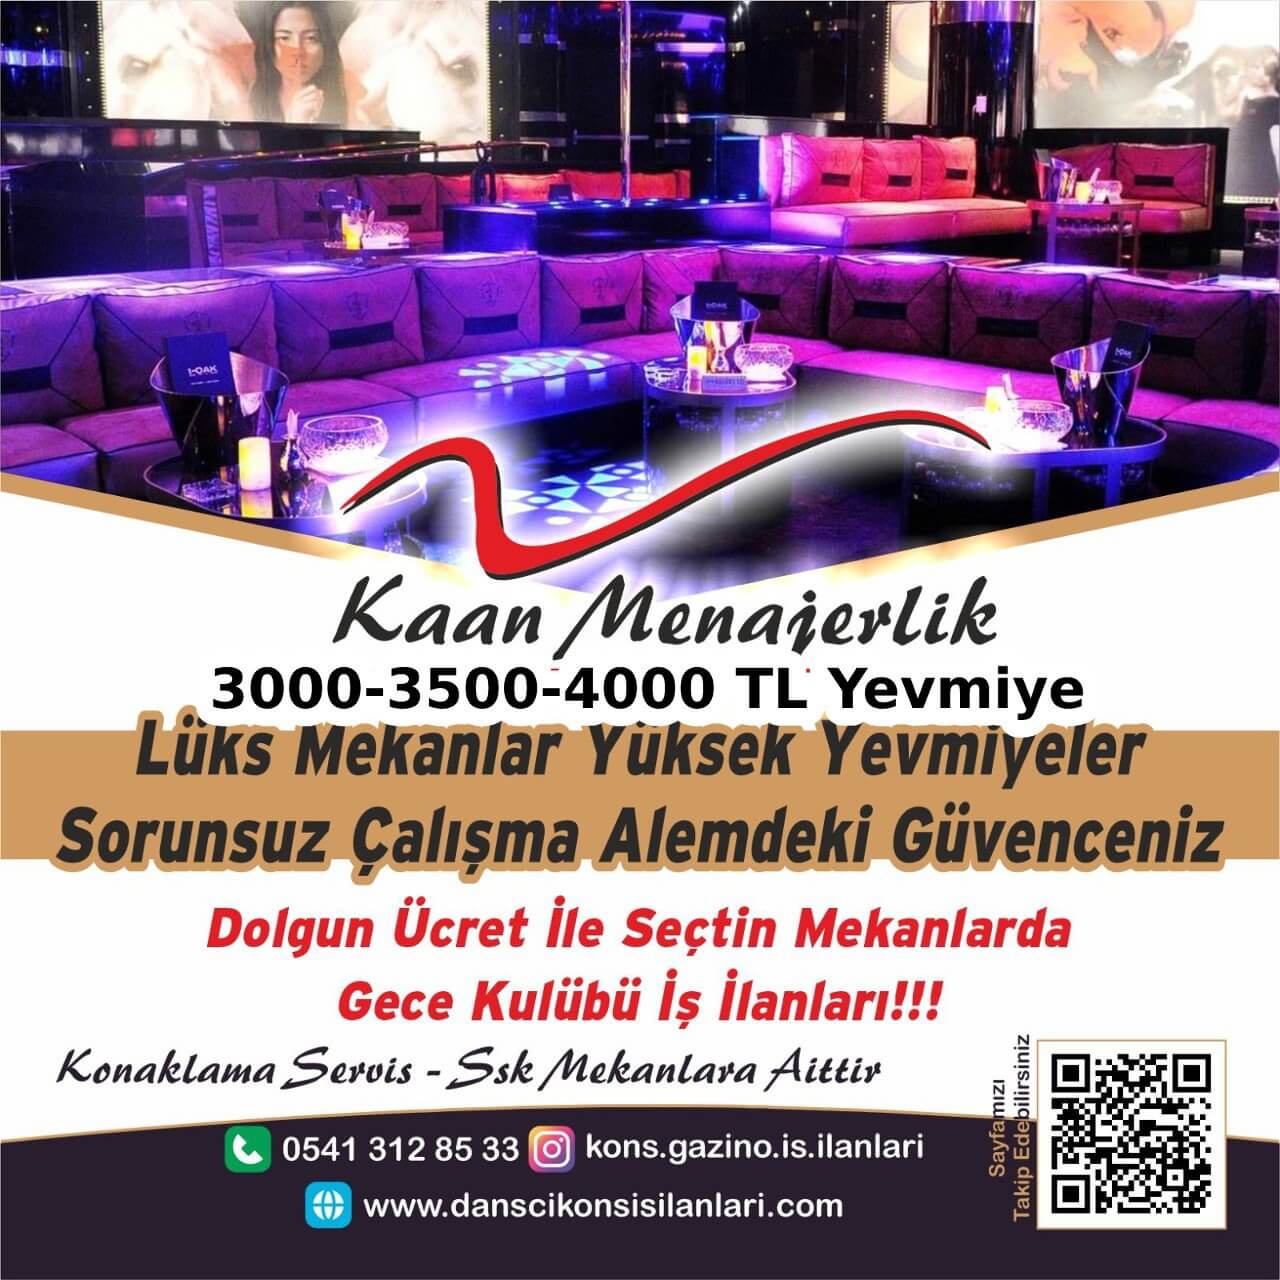 Karaman Gazino İş ilanları